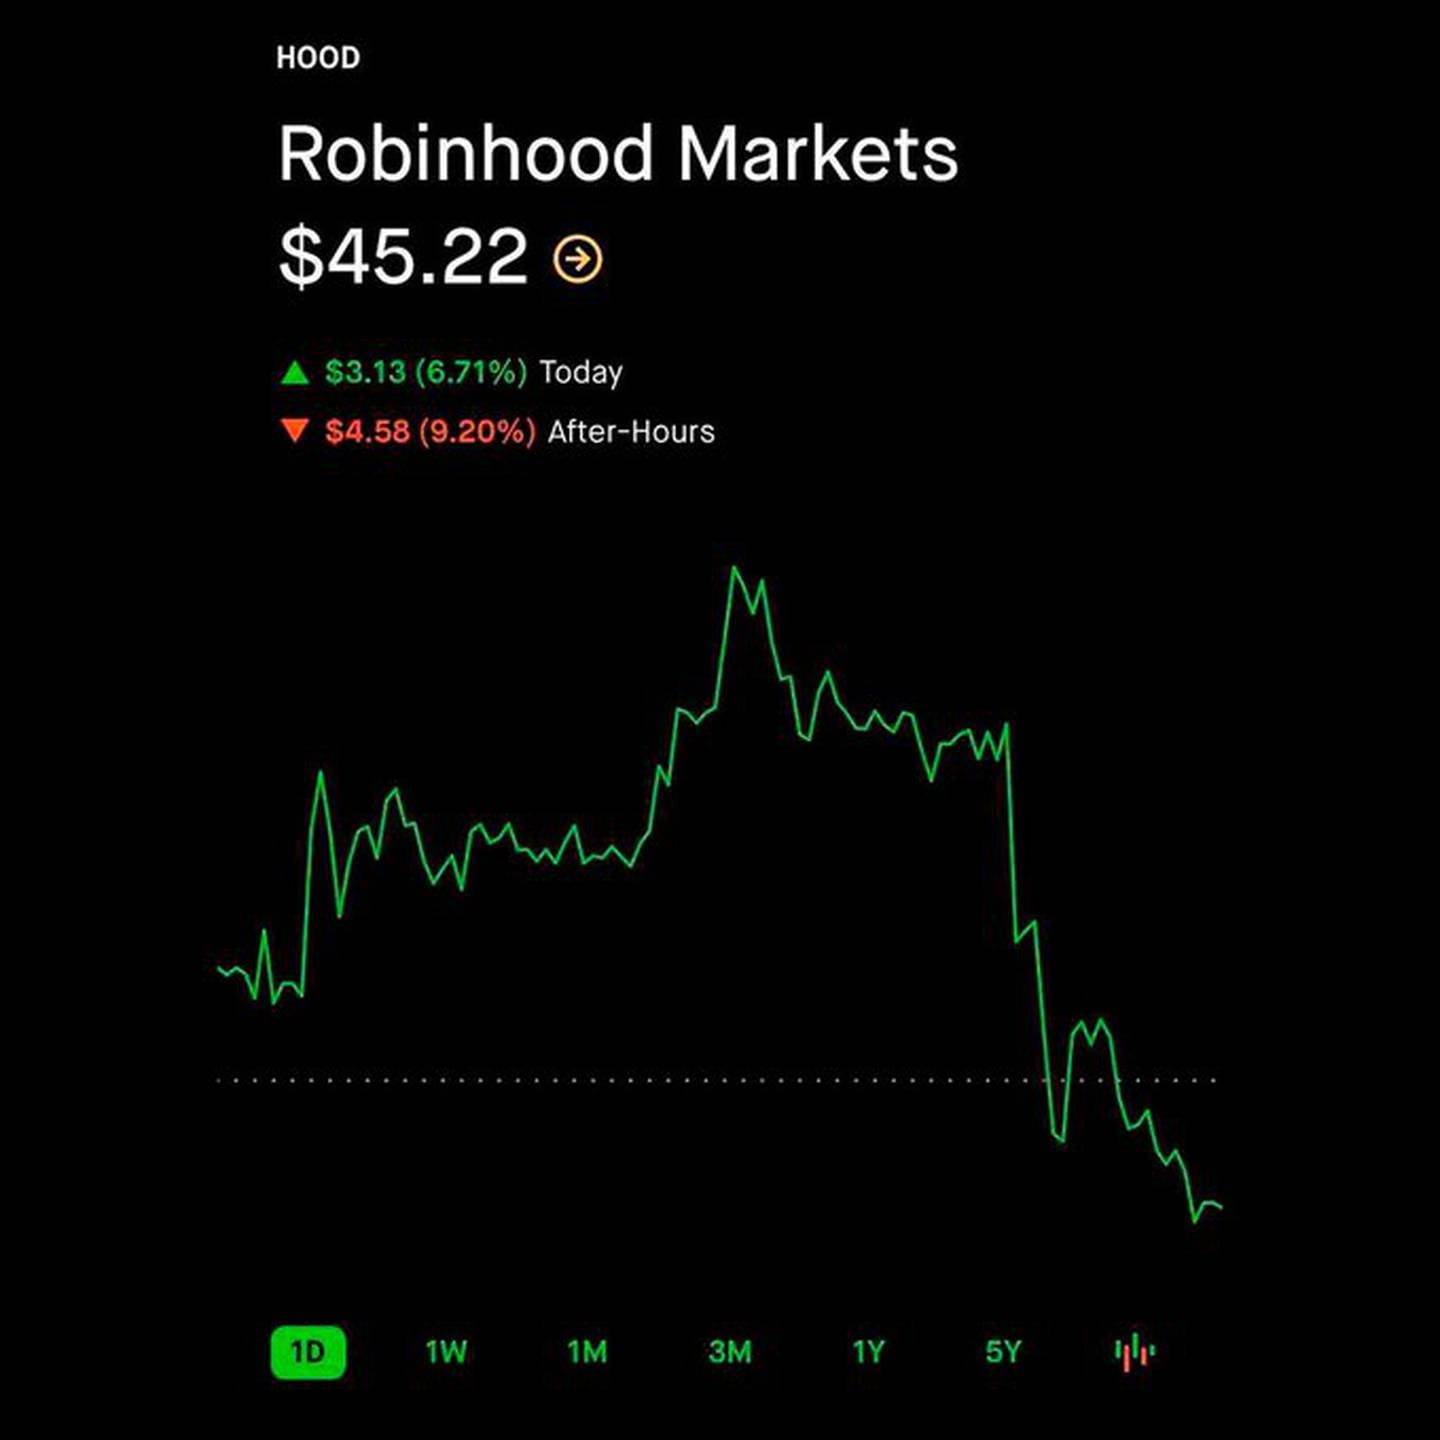 Ações da Robinwood têm forte baixa após divulgação de resultadosdfd